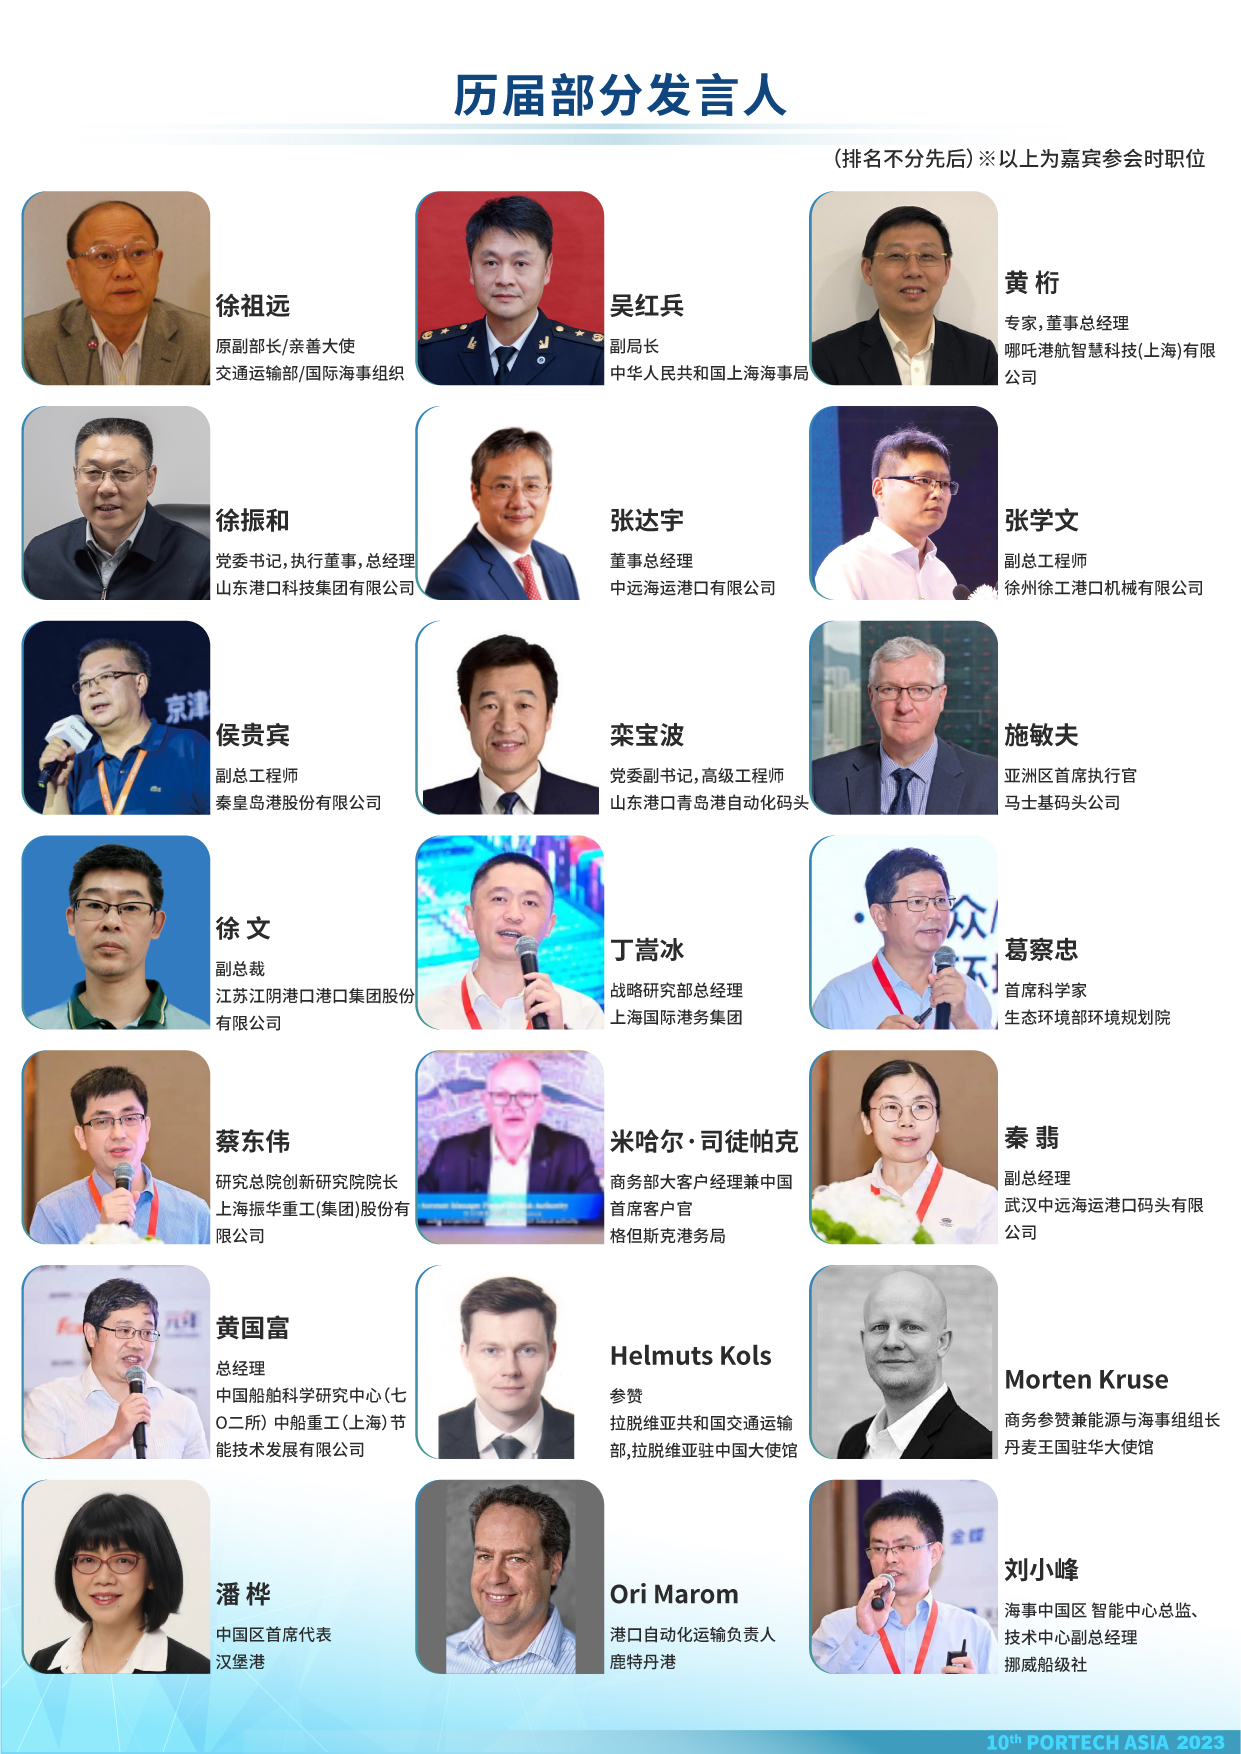 2023第十届亚太港口科技峰会